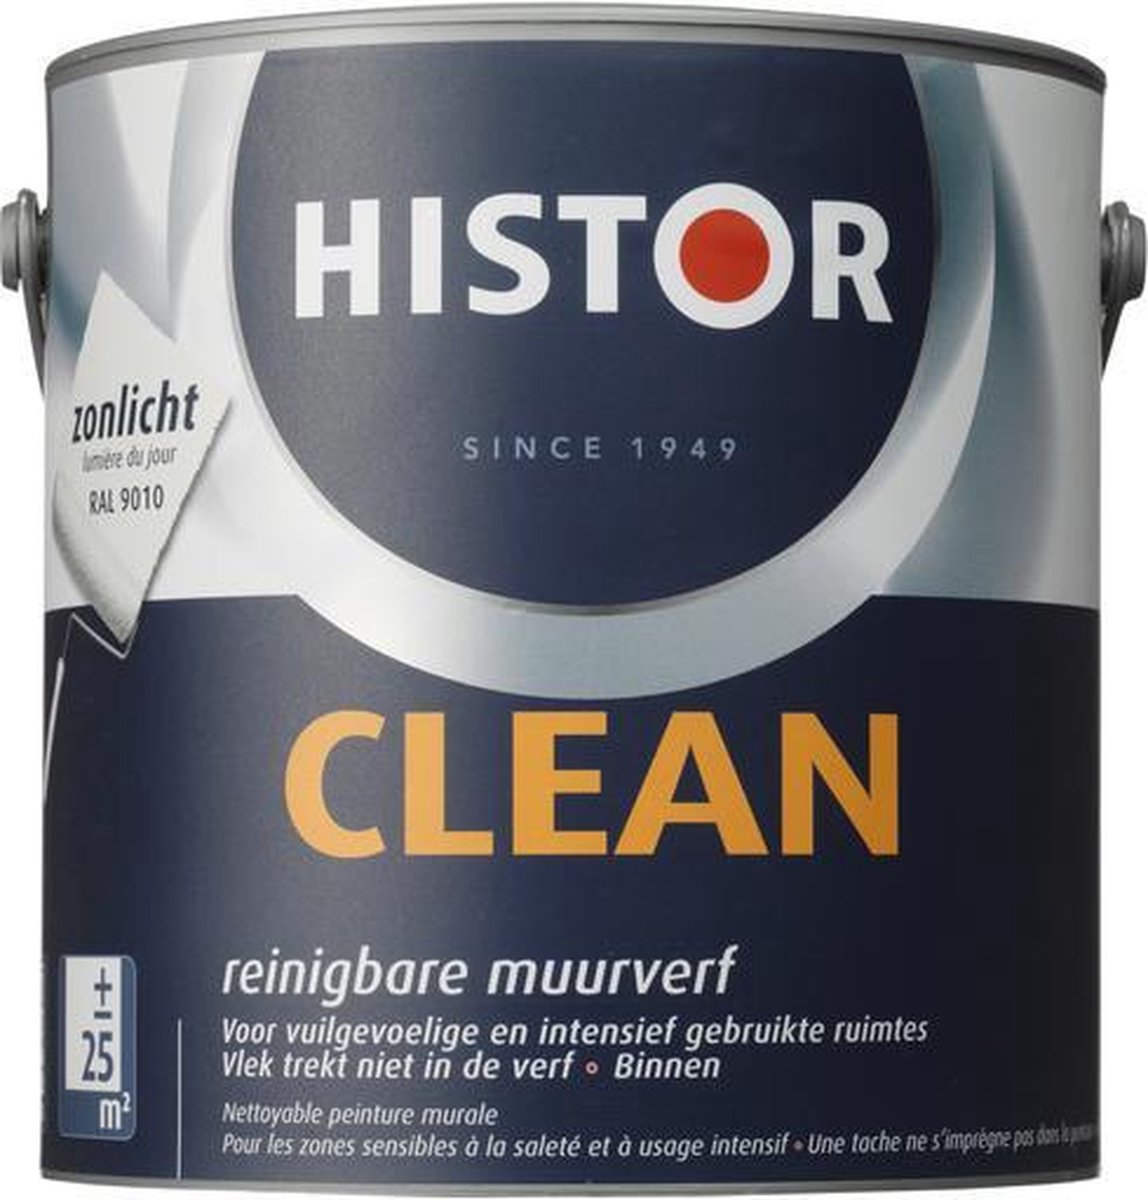 Histor Clean Muurverf - 2,5 liter - Zonlicht | bol.com